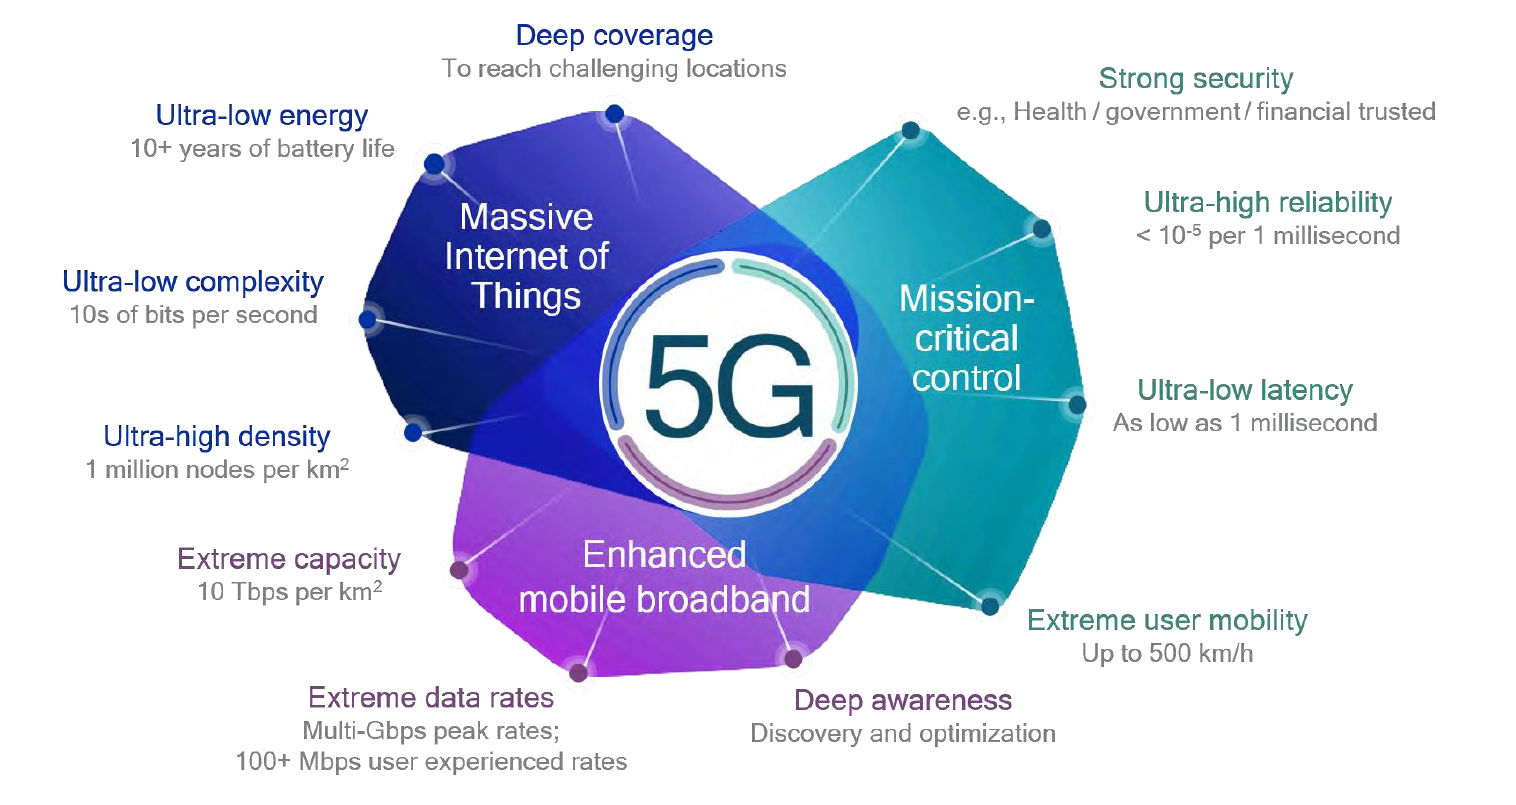 5G coverage vs. capacity